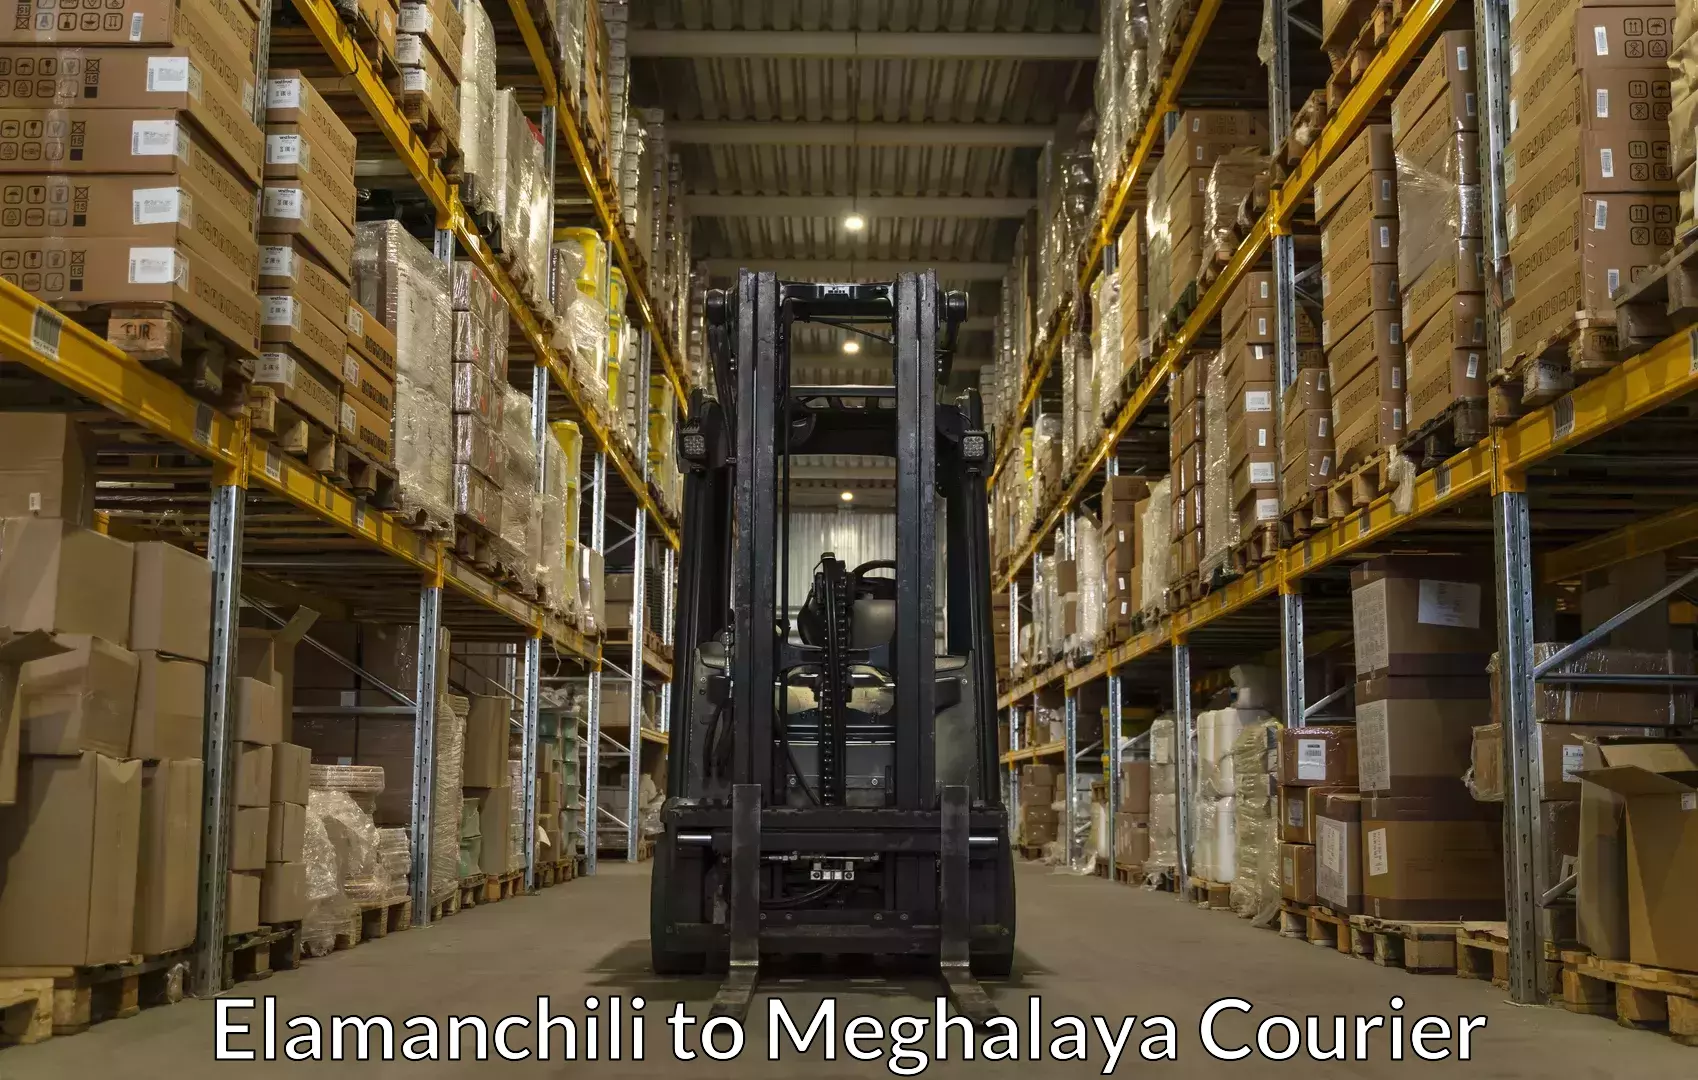 Trusted relocation experts Elamanchili to Meghalaya